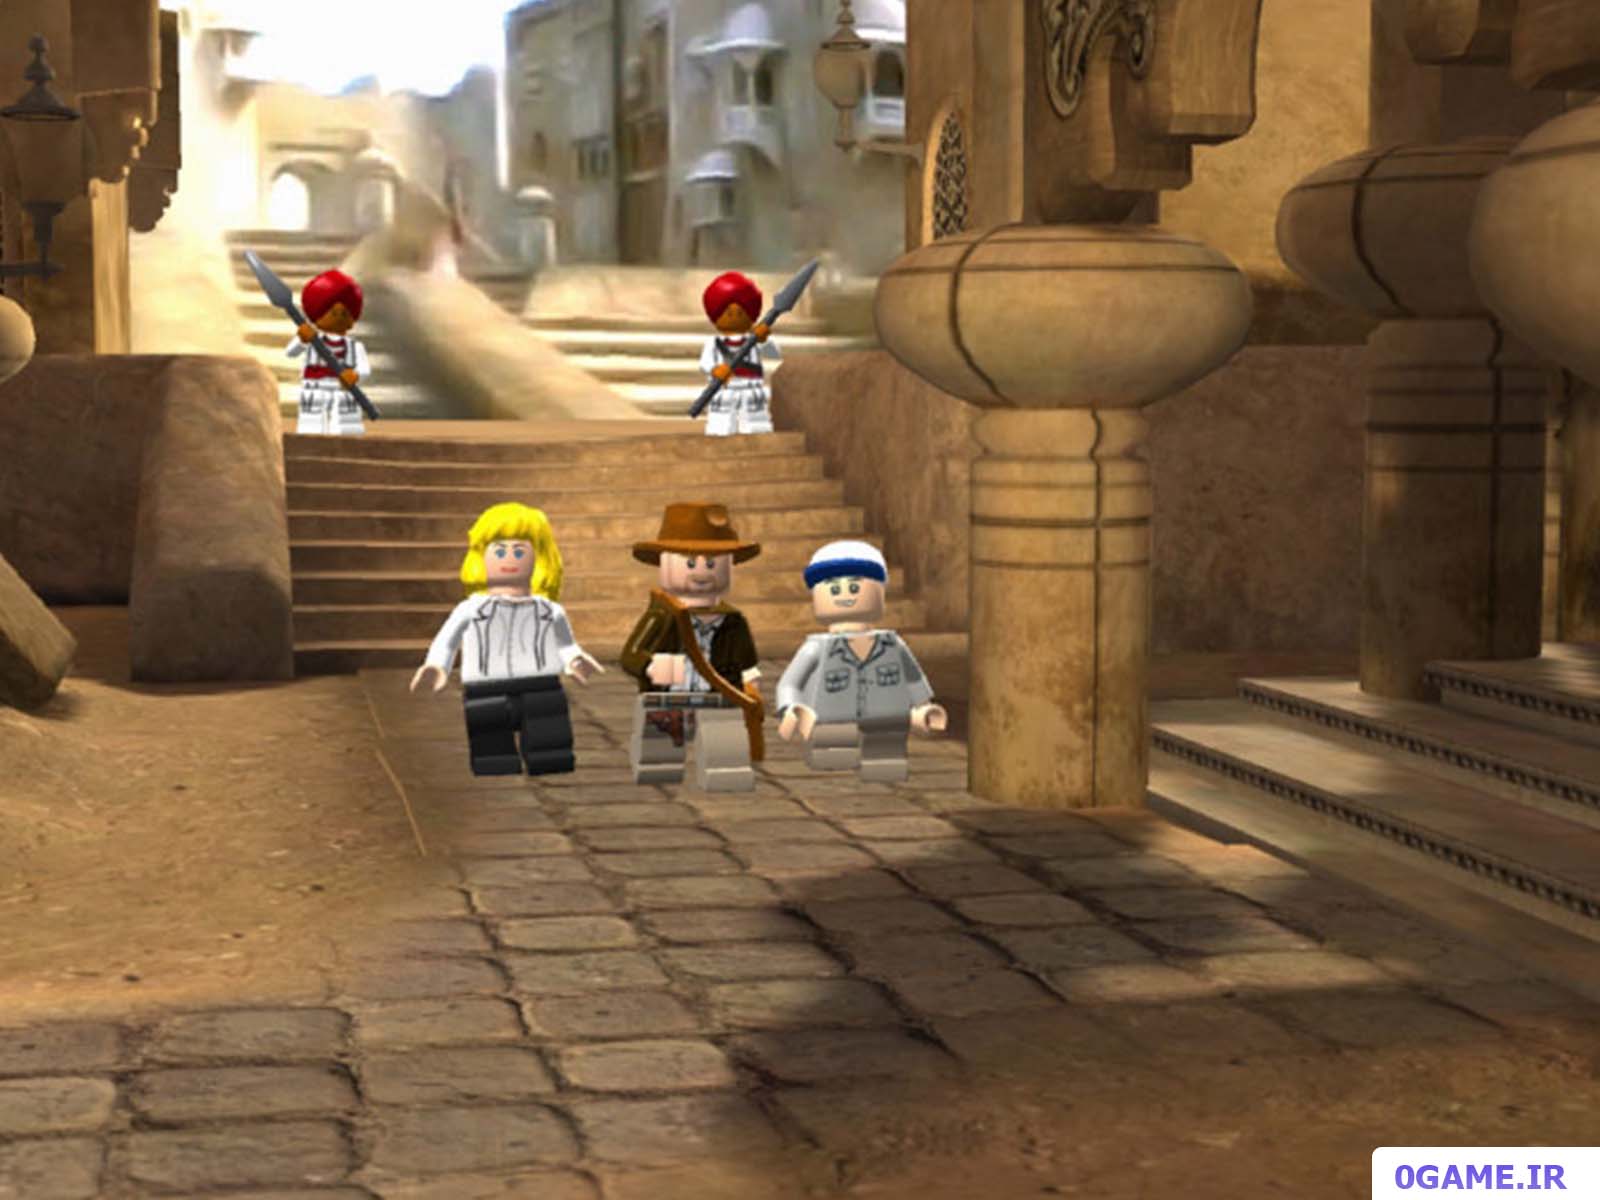 دانلود بازی لگو ایندیانا جونز 1 (LEGO Indiana Jones) نسخه کامل برای کامپیوتر